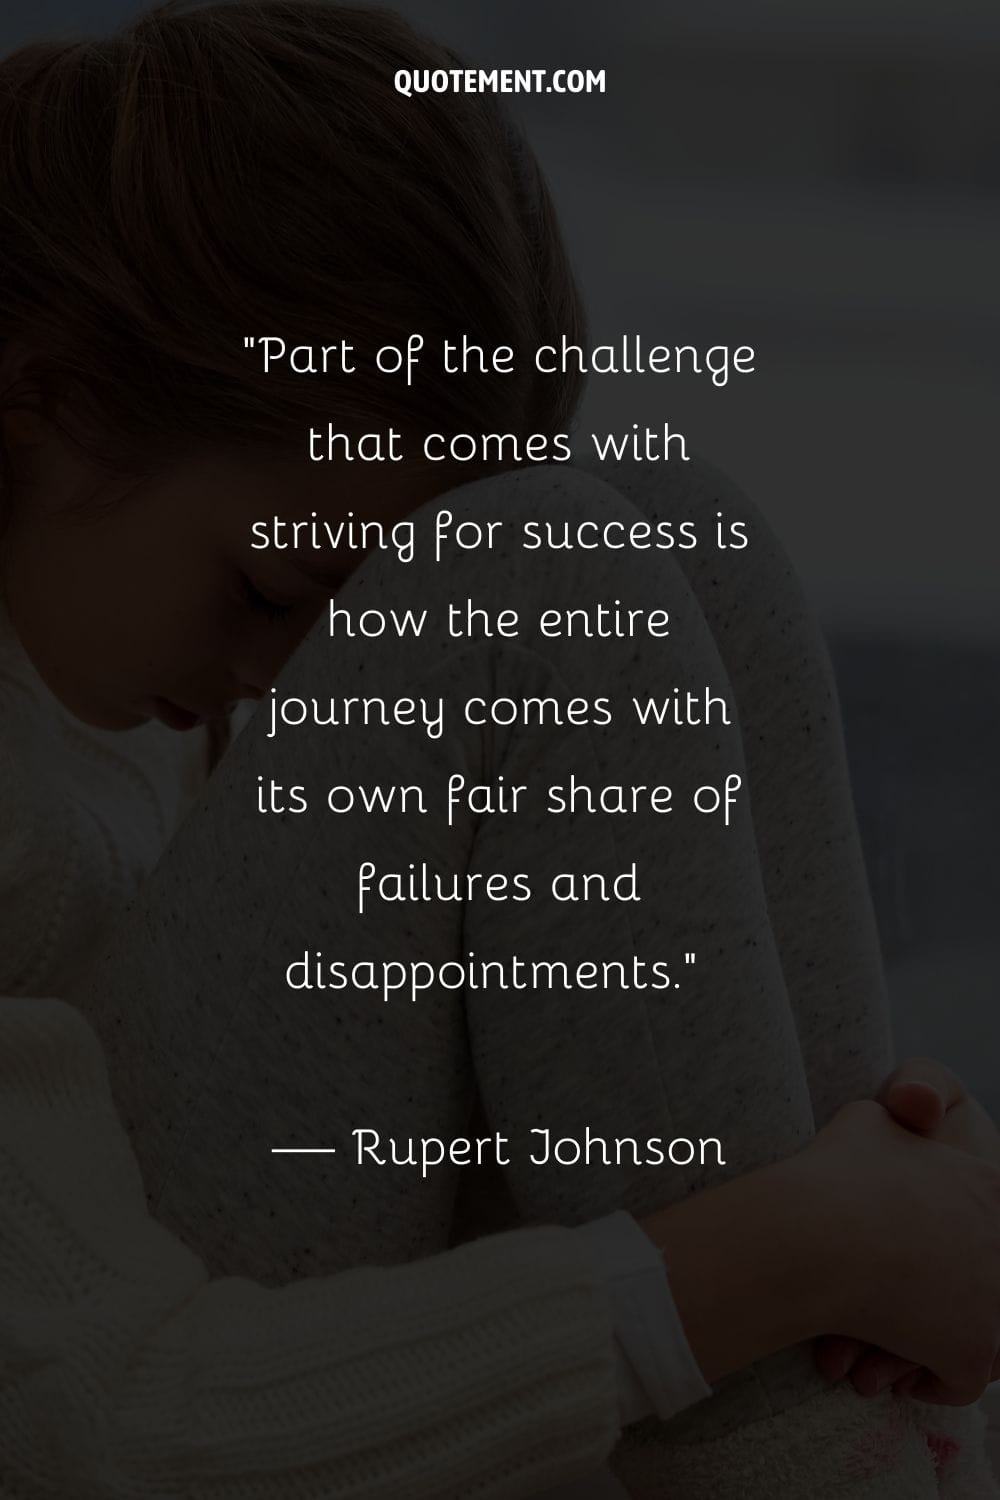 Parte del reto que supone esforzarse por alcanzar el éxito es que todo el camino está plagado de fracasos y decepciones.